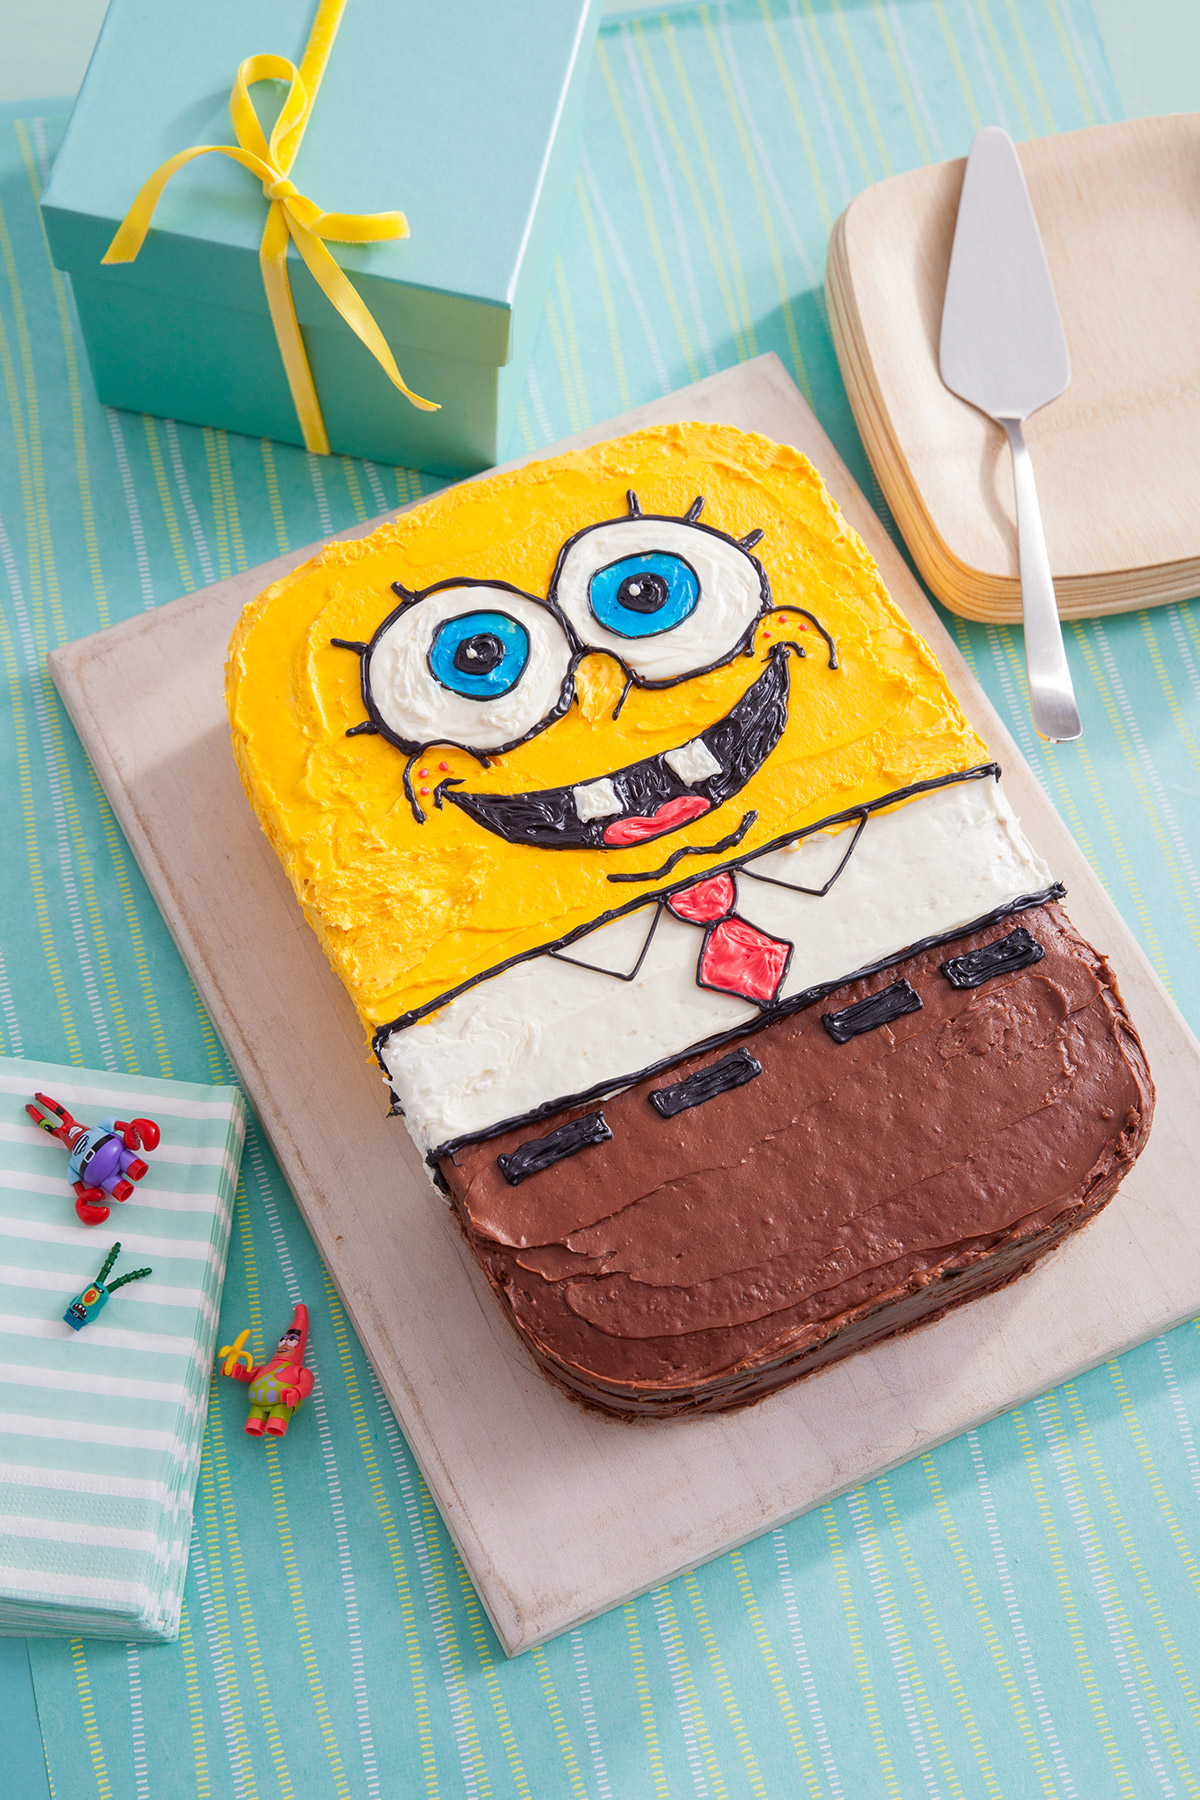 spongebob happy birthday cake